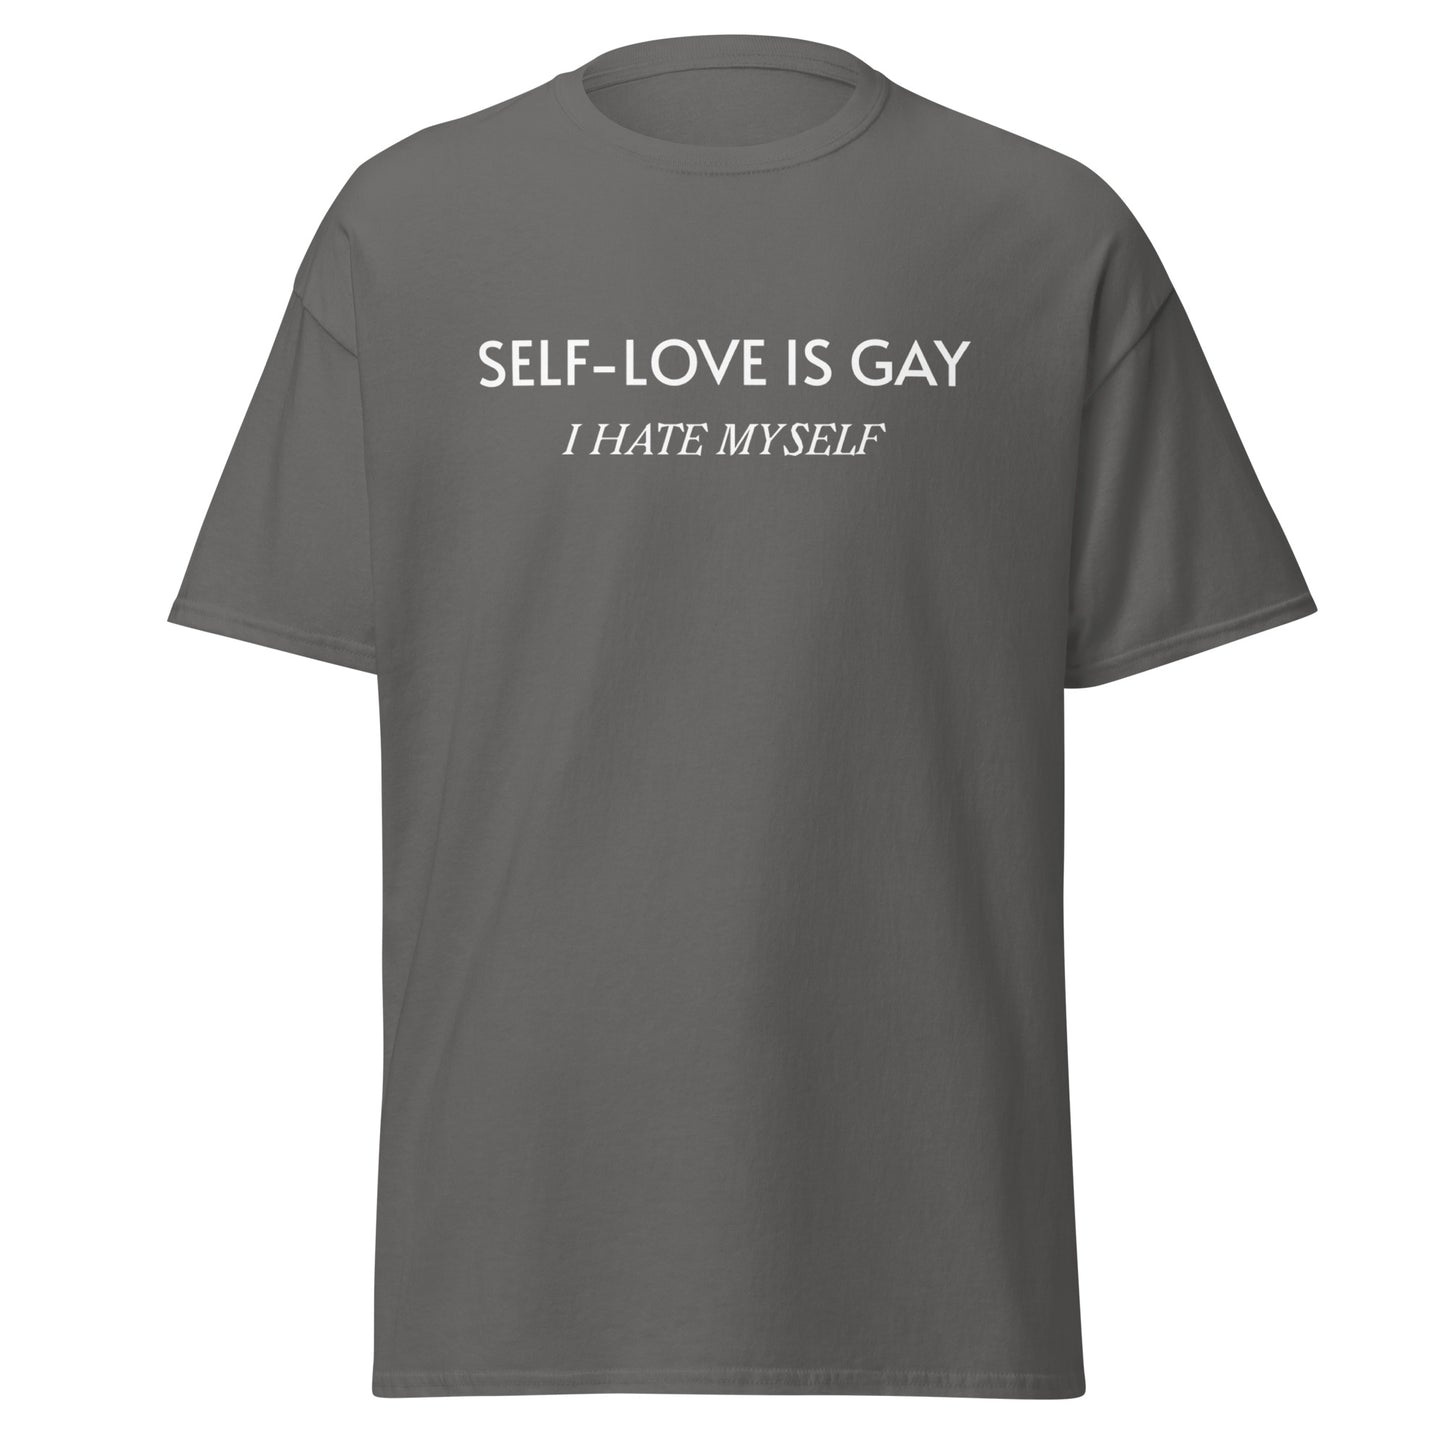 SELF-LOVE IS GAY